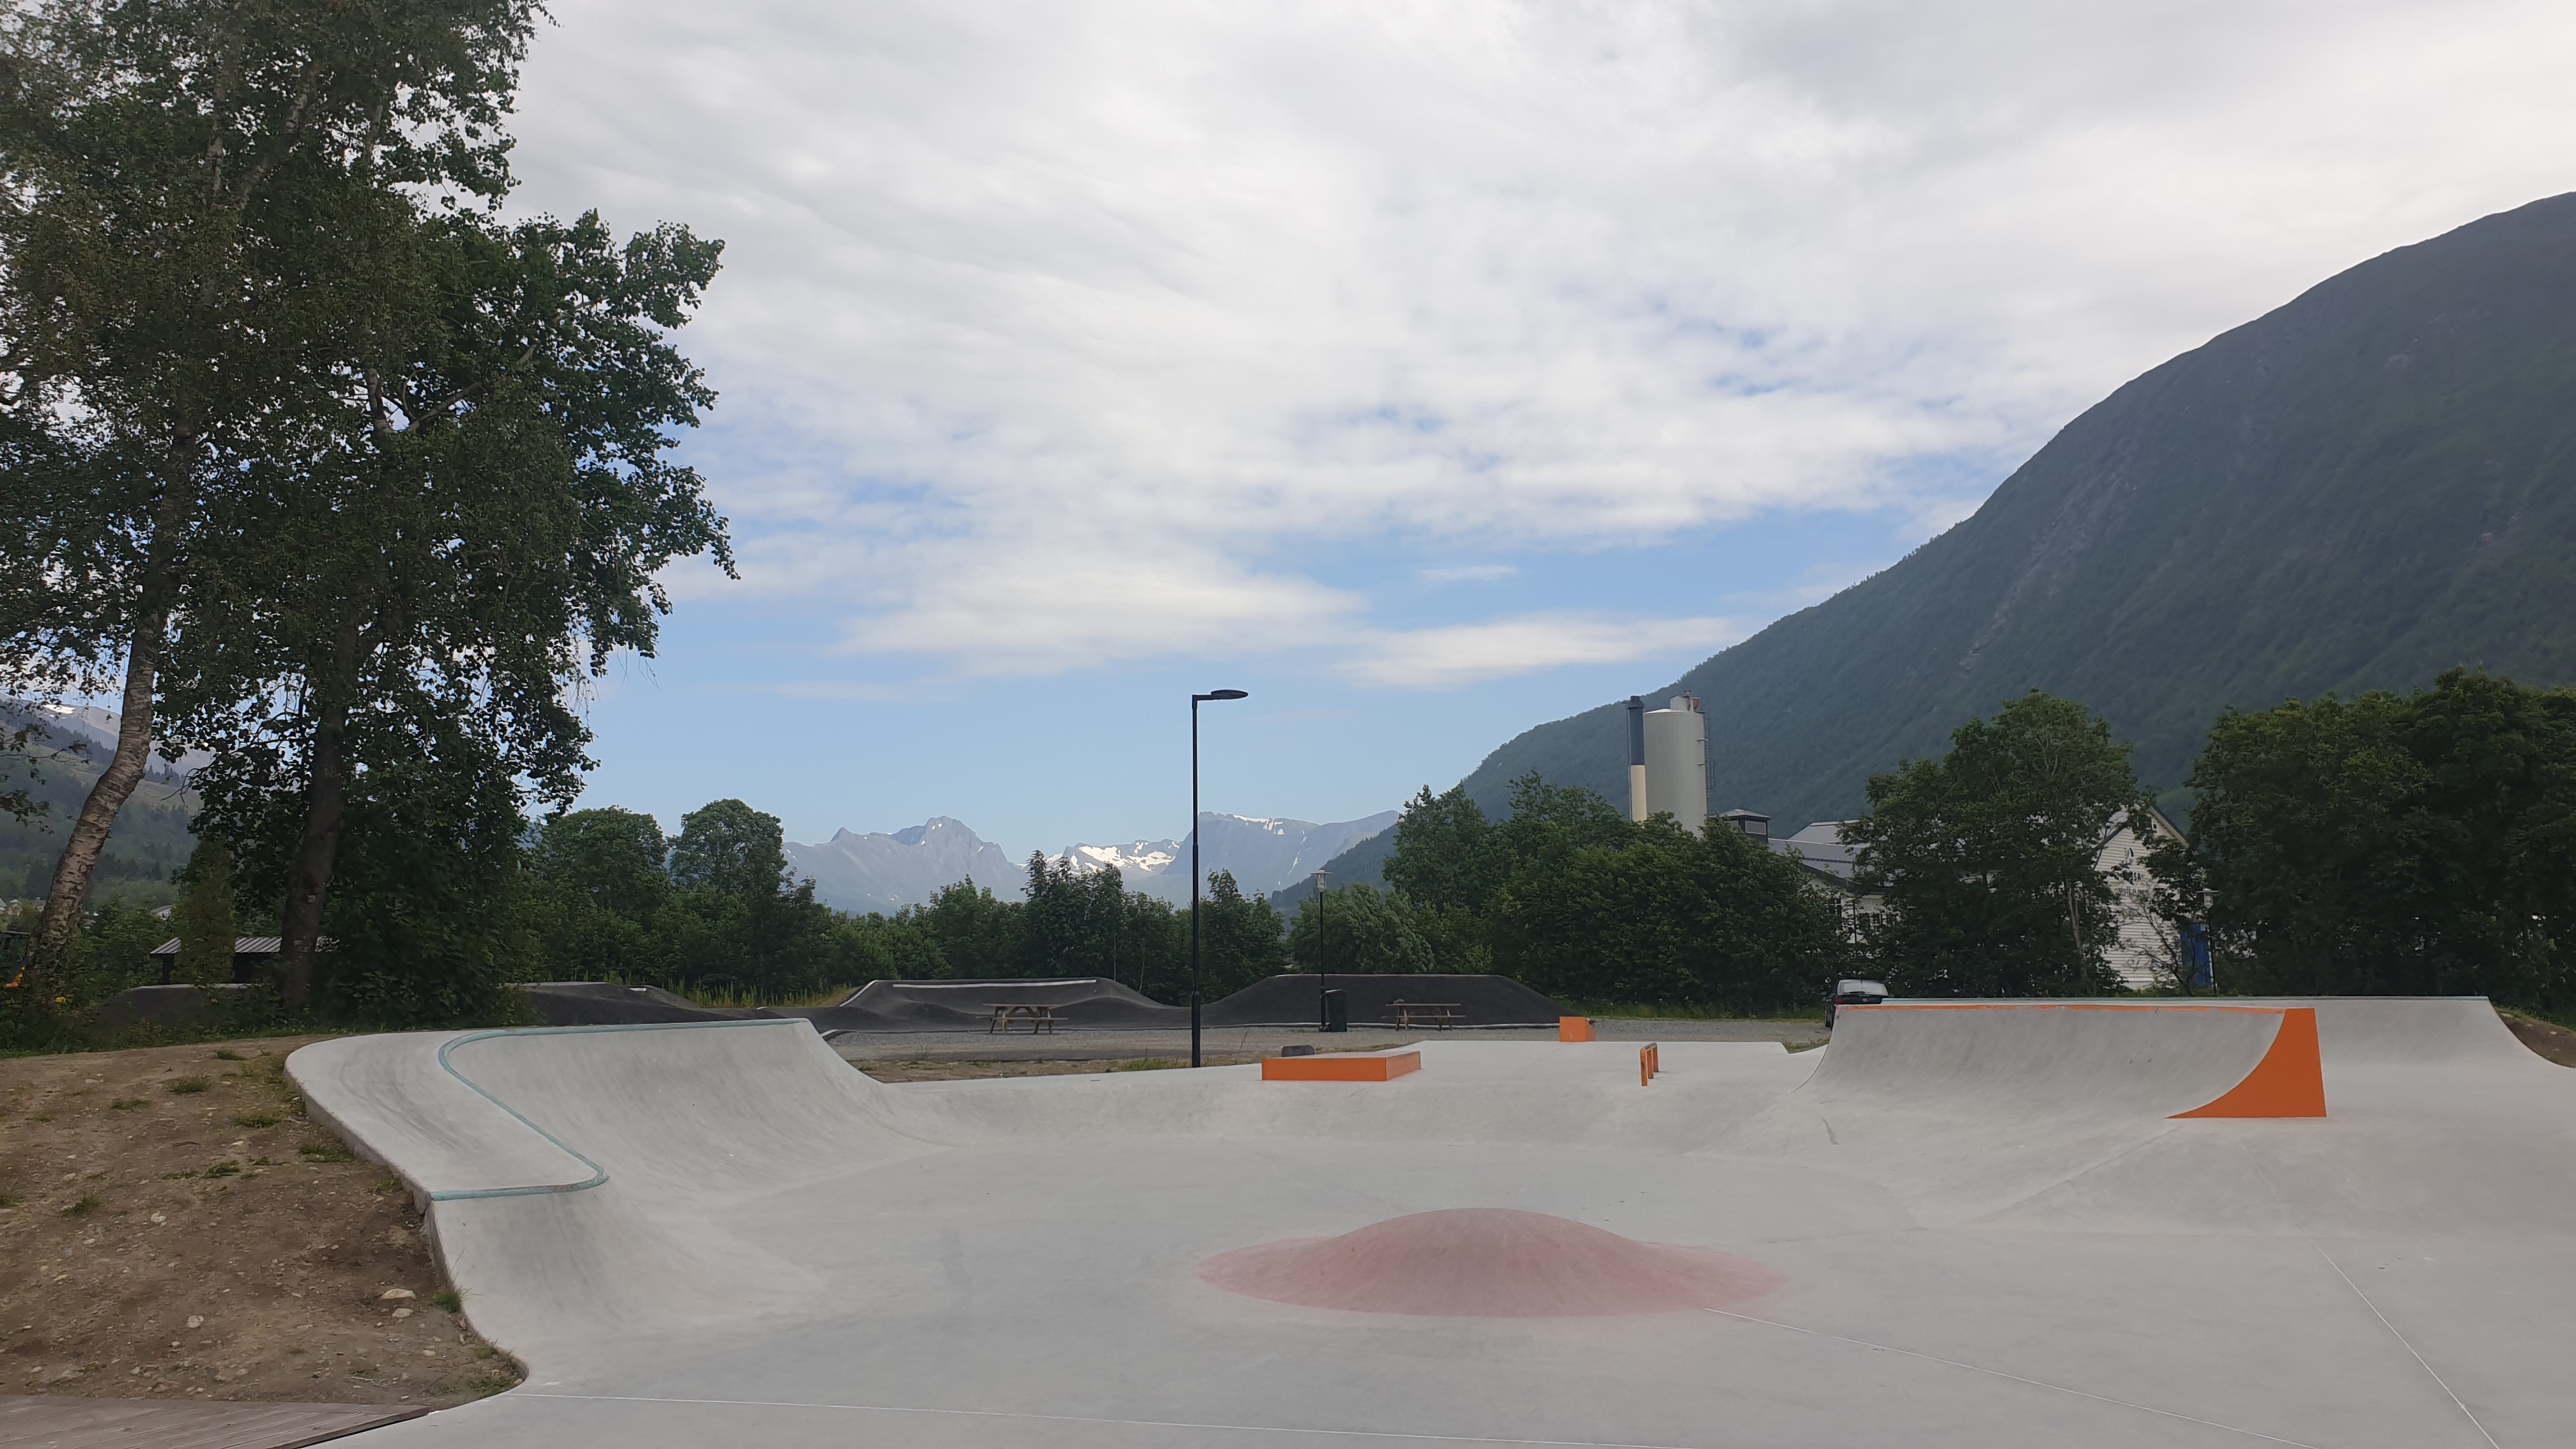 Bilde som viser Ørsta skatepark, hvor man gar god avstand mellom elementene for å sikre god flyt. På bildet ser man nettopp dette. 